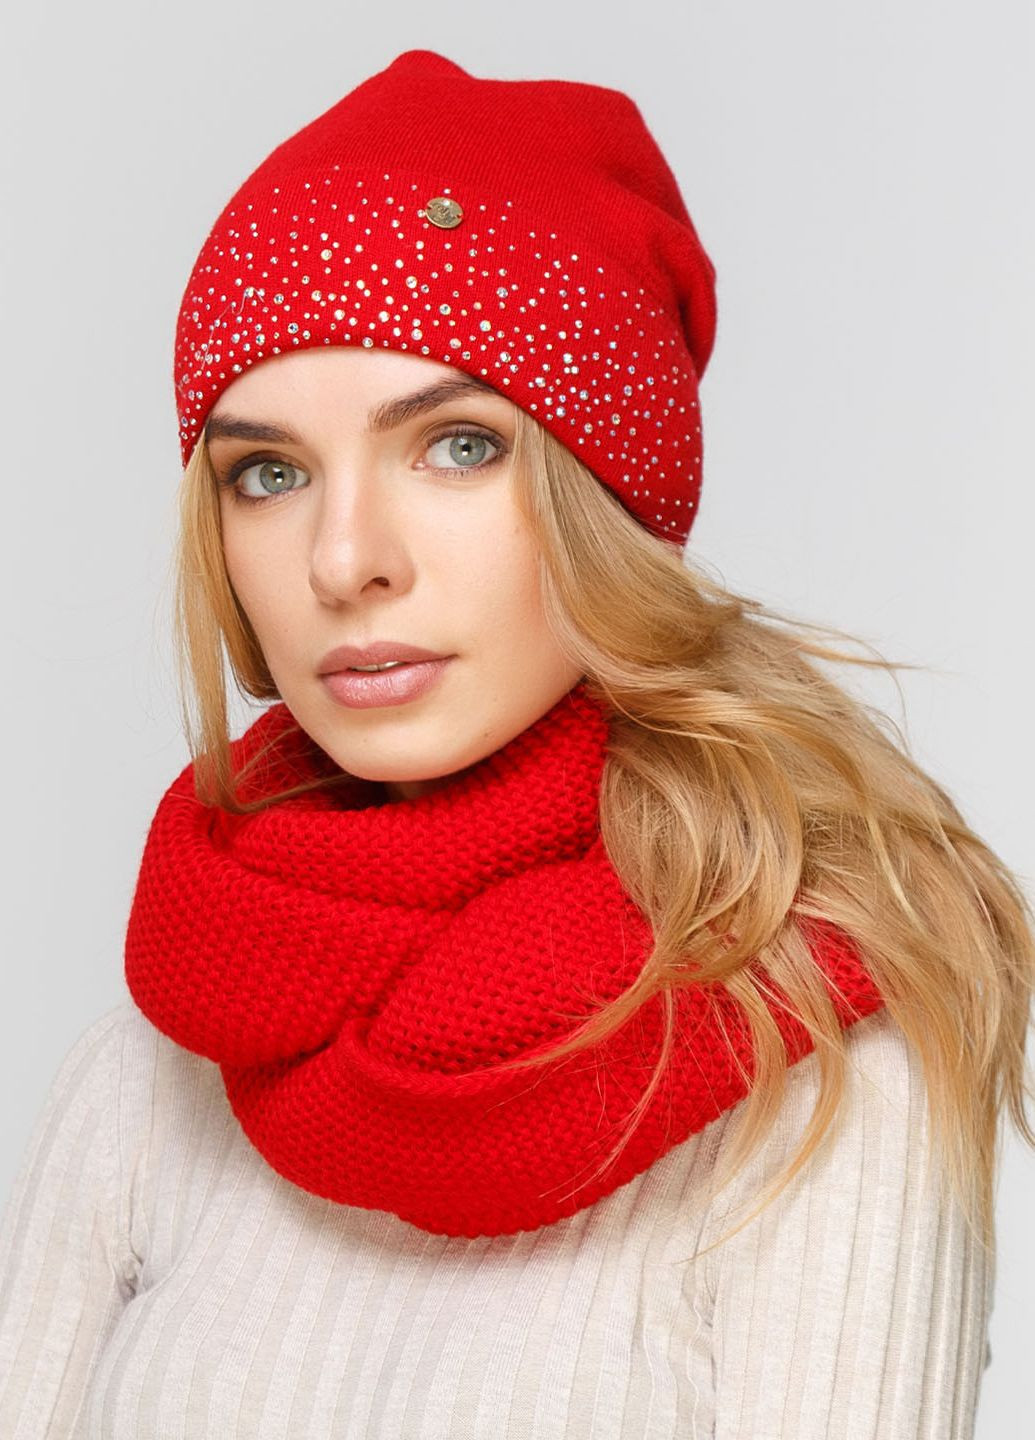 Теплый зимний комплект (шапка, шарф-снуд) на флисовой подкладке 660441 DeMari 122 Грейс камни шапка + шарф однотонные красные кэжуалы шерсть